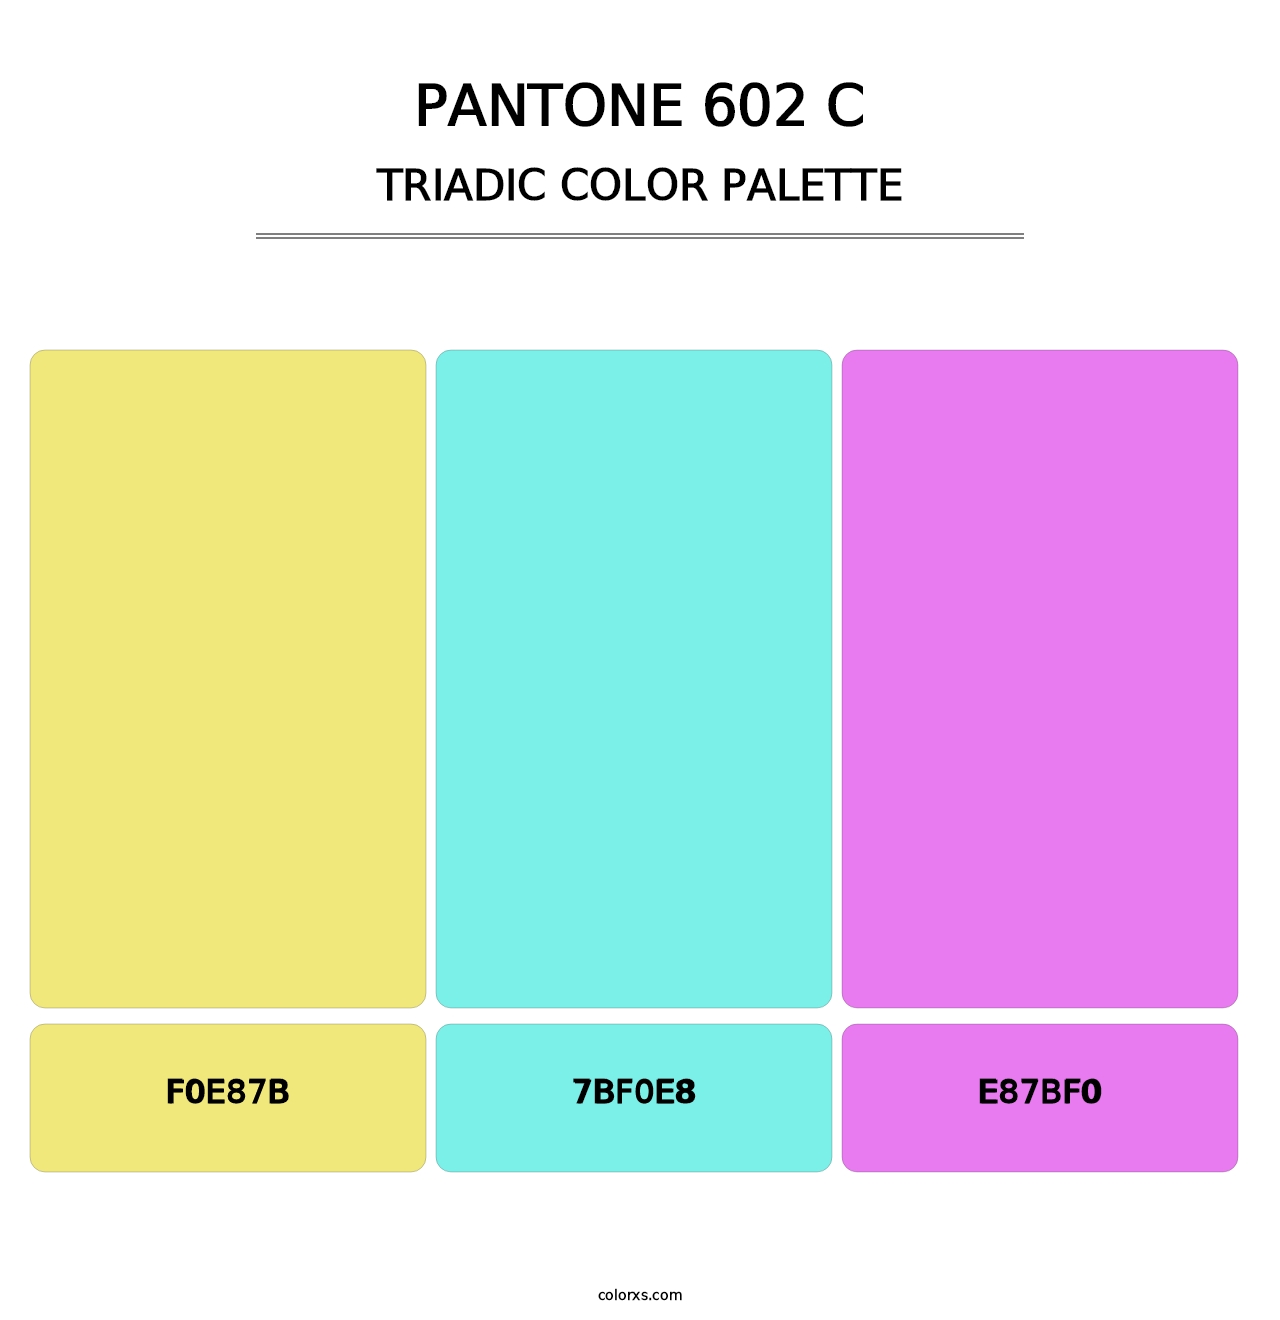 PANTONE 602 C - Triadic Color Palette